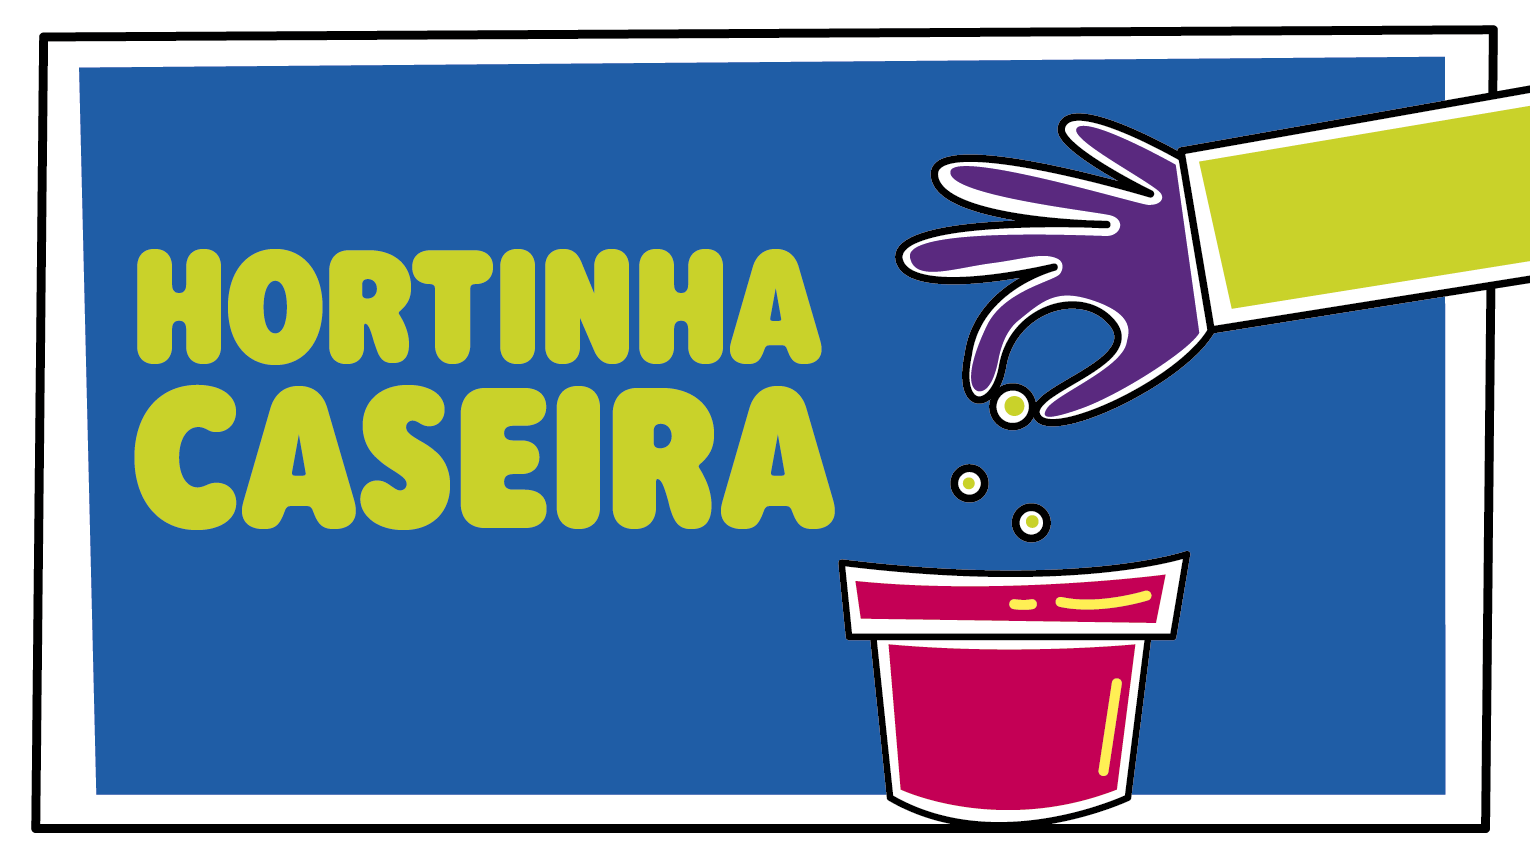 HORTINHA CASEIRA